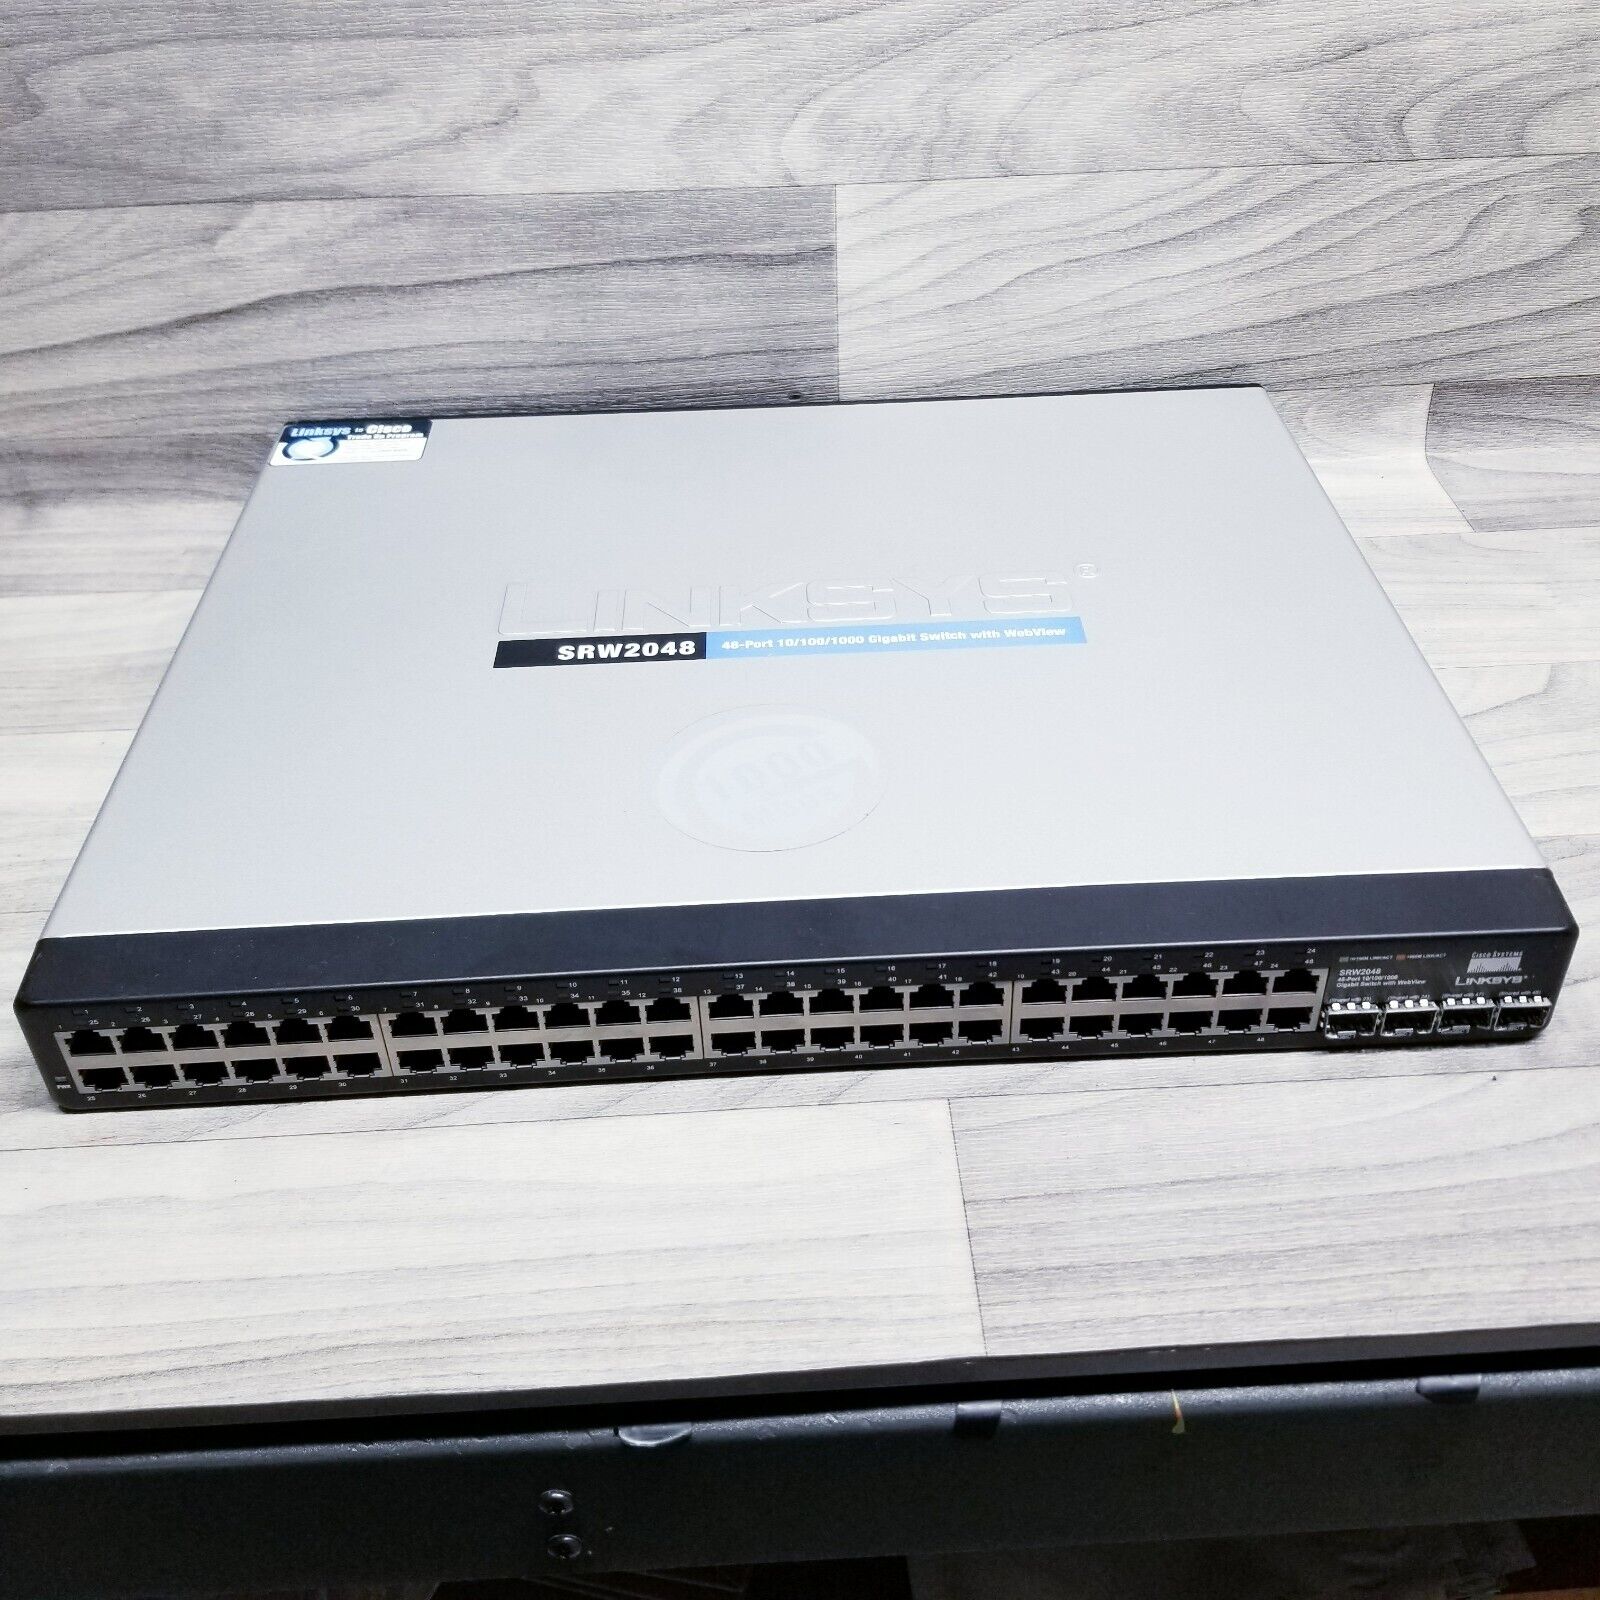 Cisco Linksys SRW2048 48-port WebView Gigabit Ethernet Managed Switch w/brackets